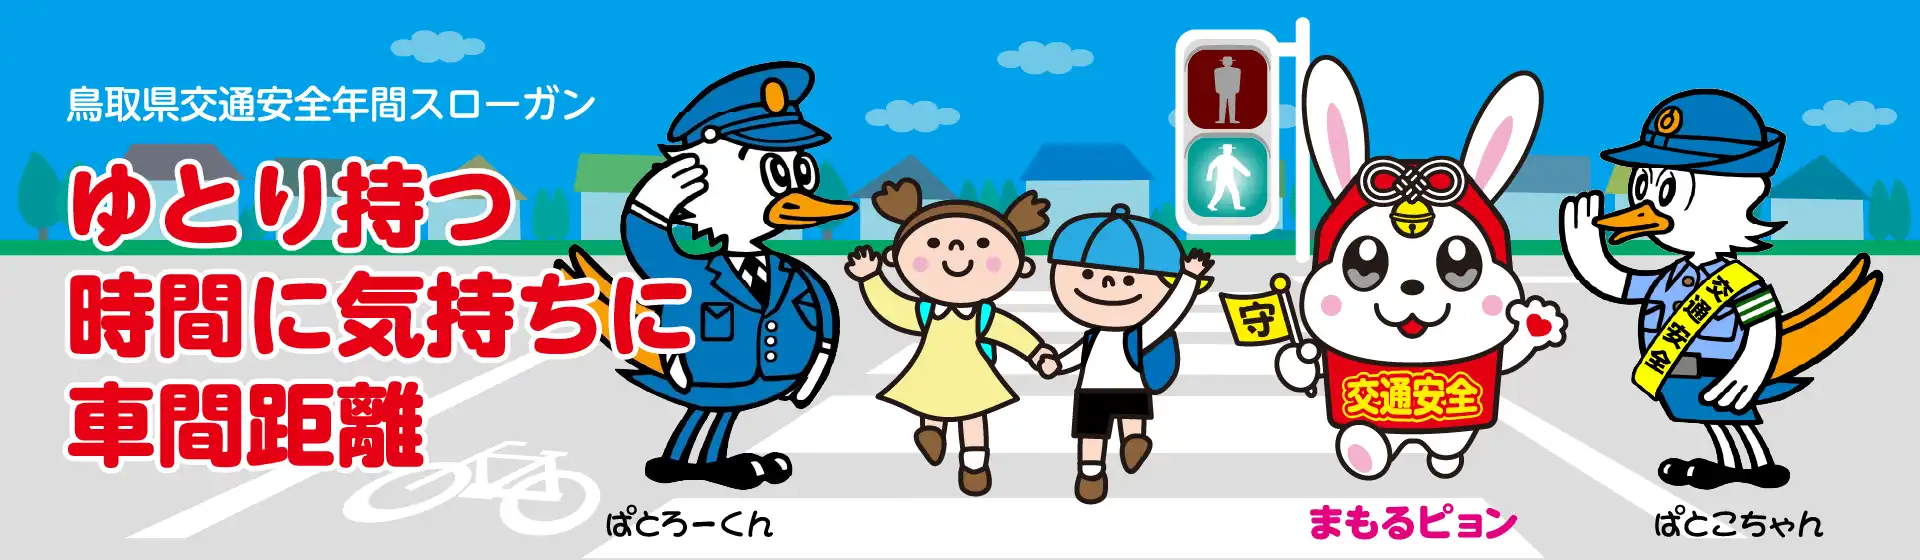 鳥取県交通安全協会マスコットキャラクター「まもるピョン」